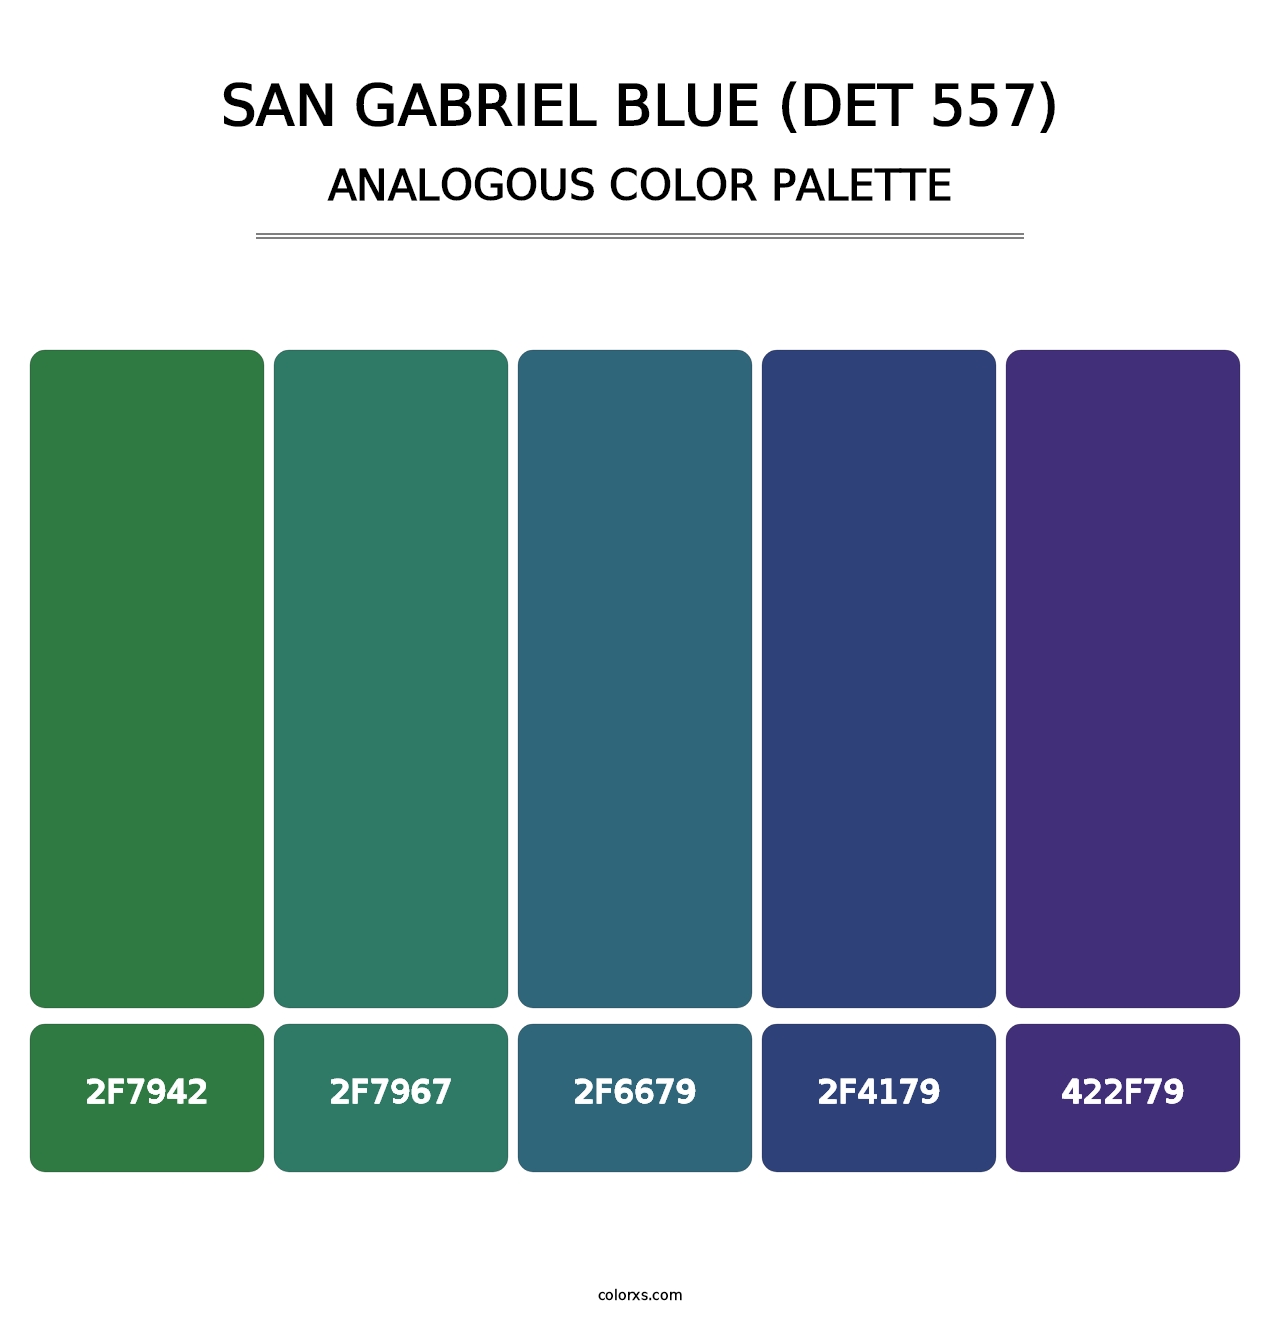 San Gabriel Blue (DET 557) - Analogous Color Palette